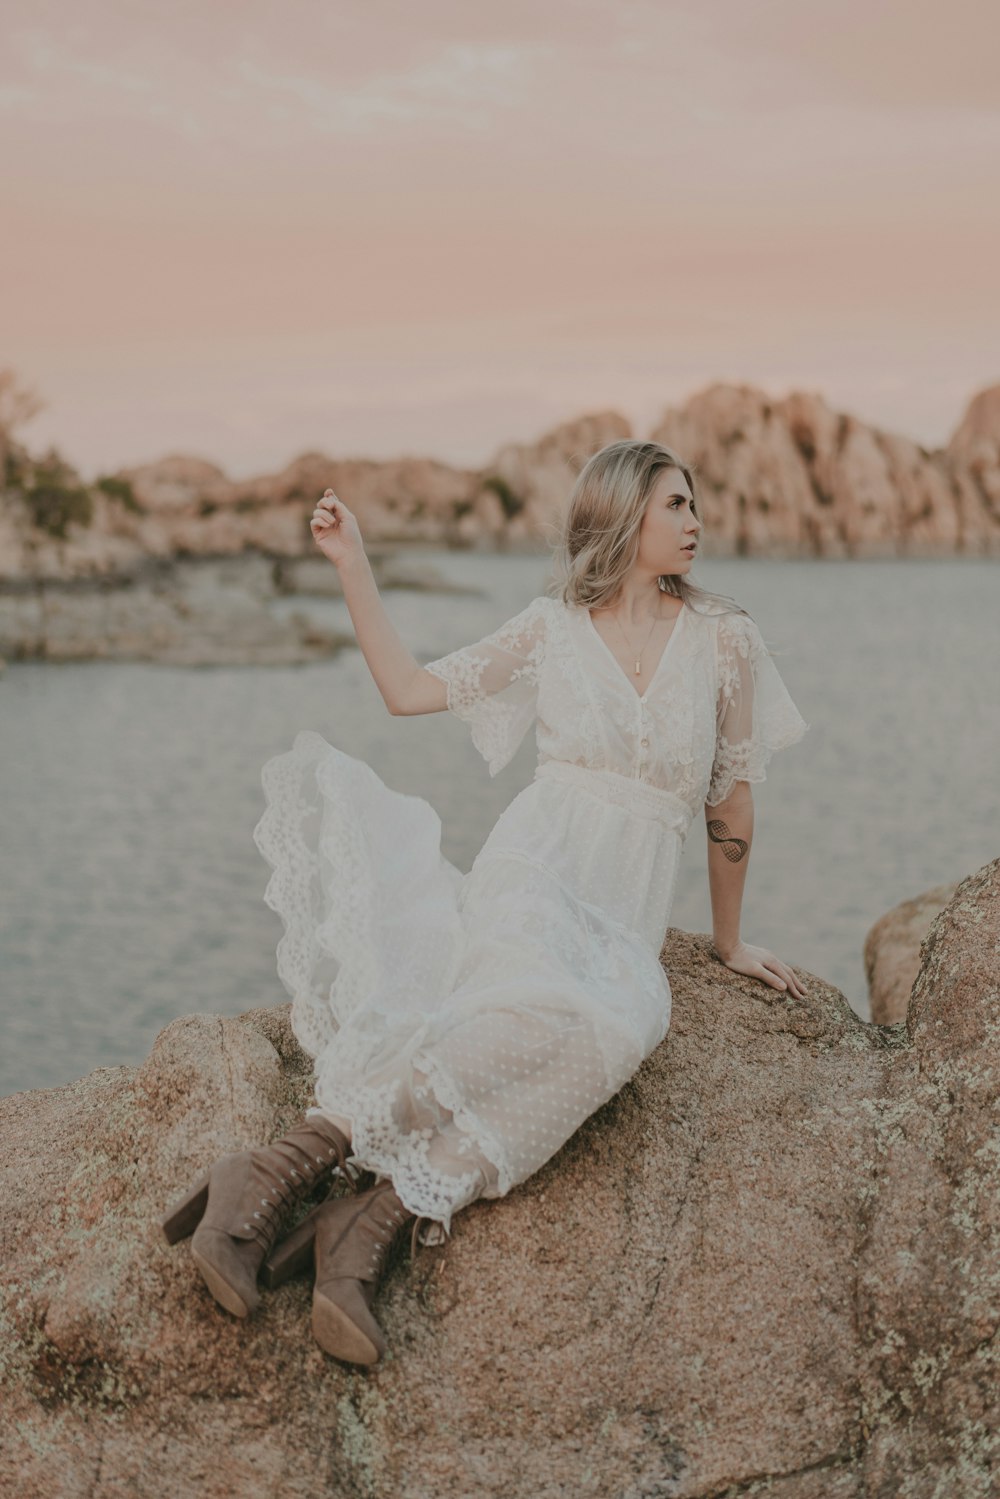 岩の上に座っている白いドレスを着た女性